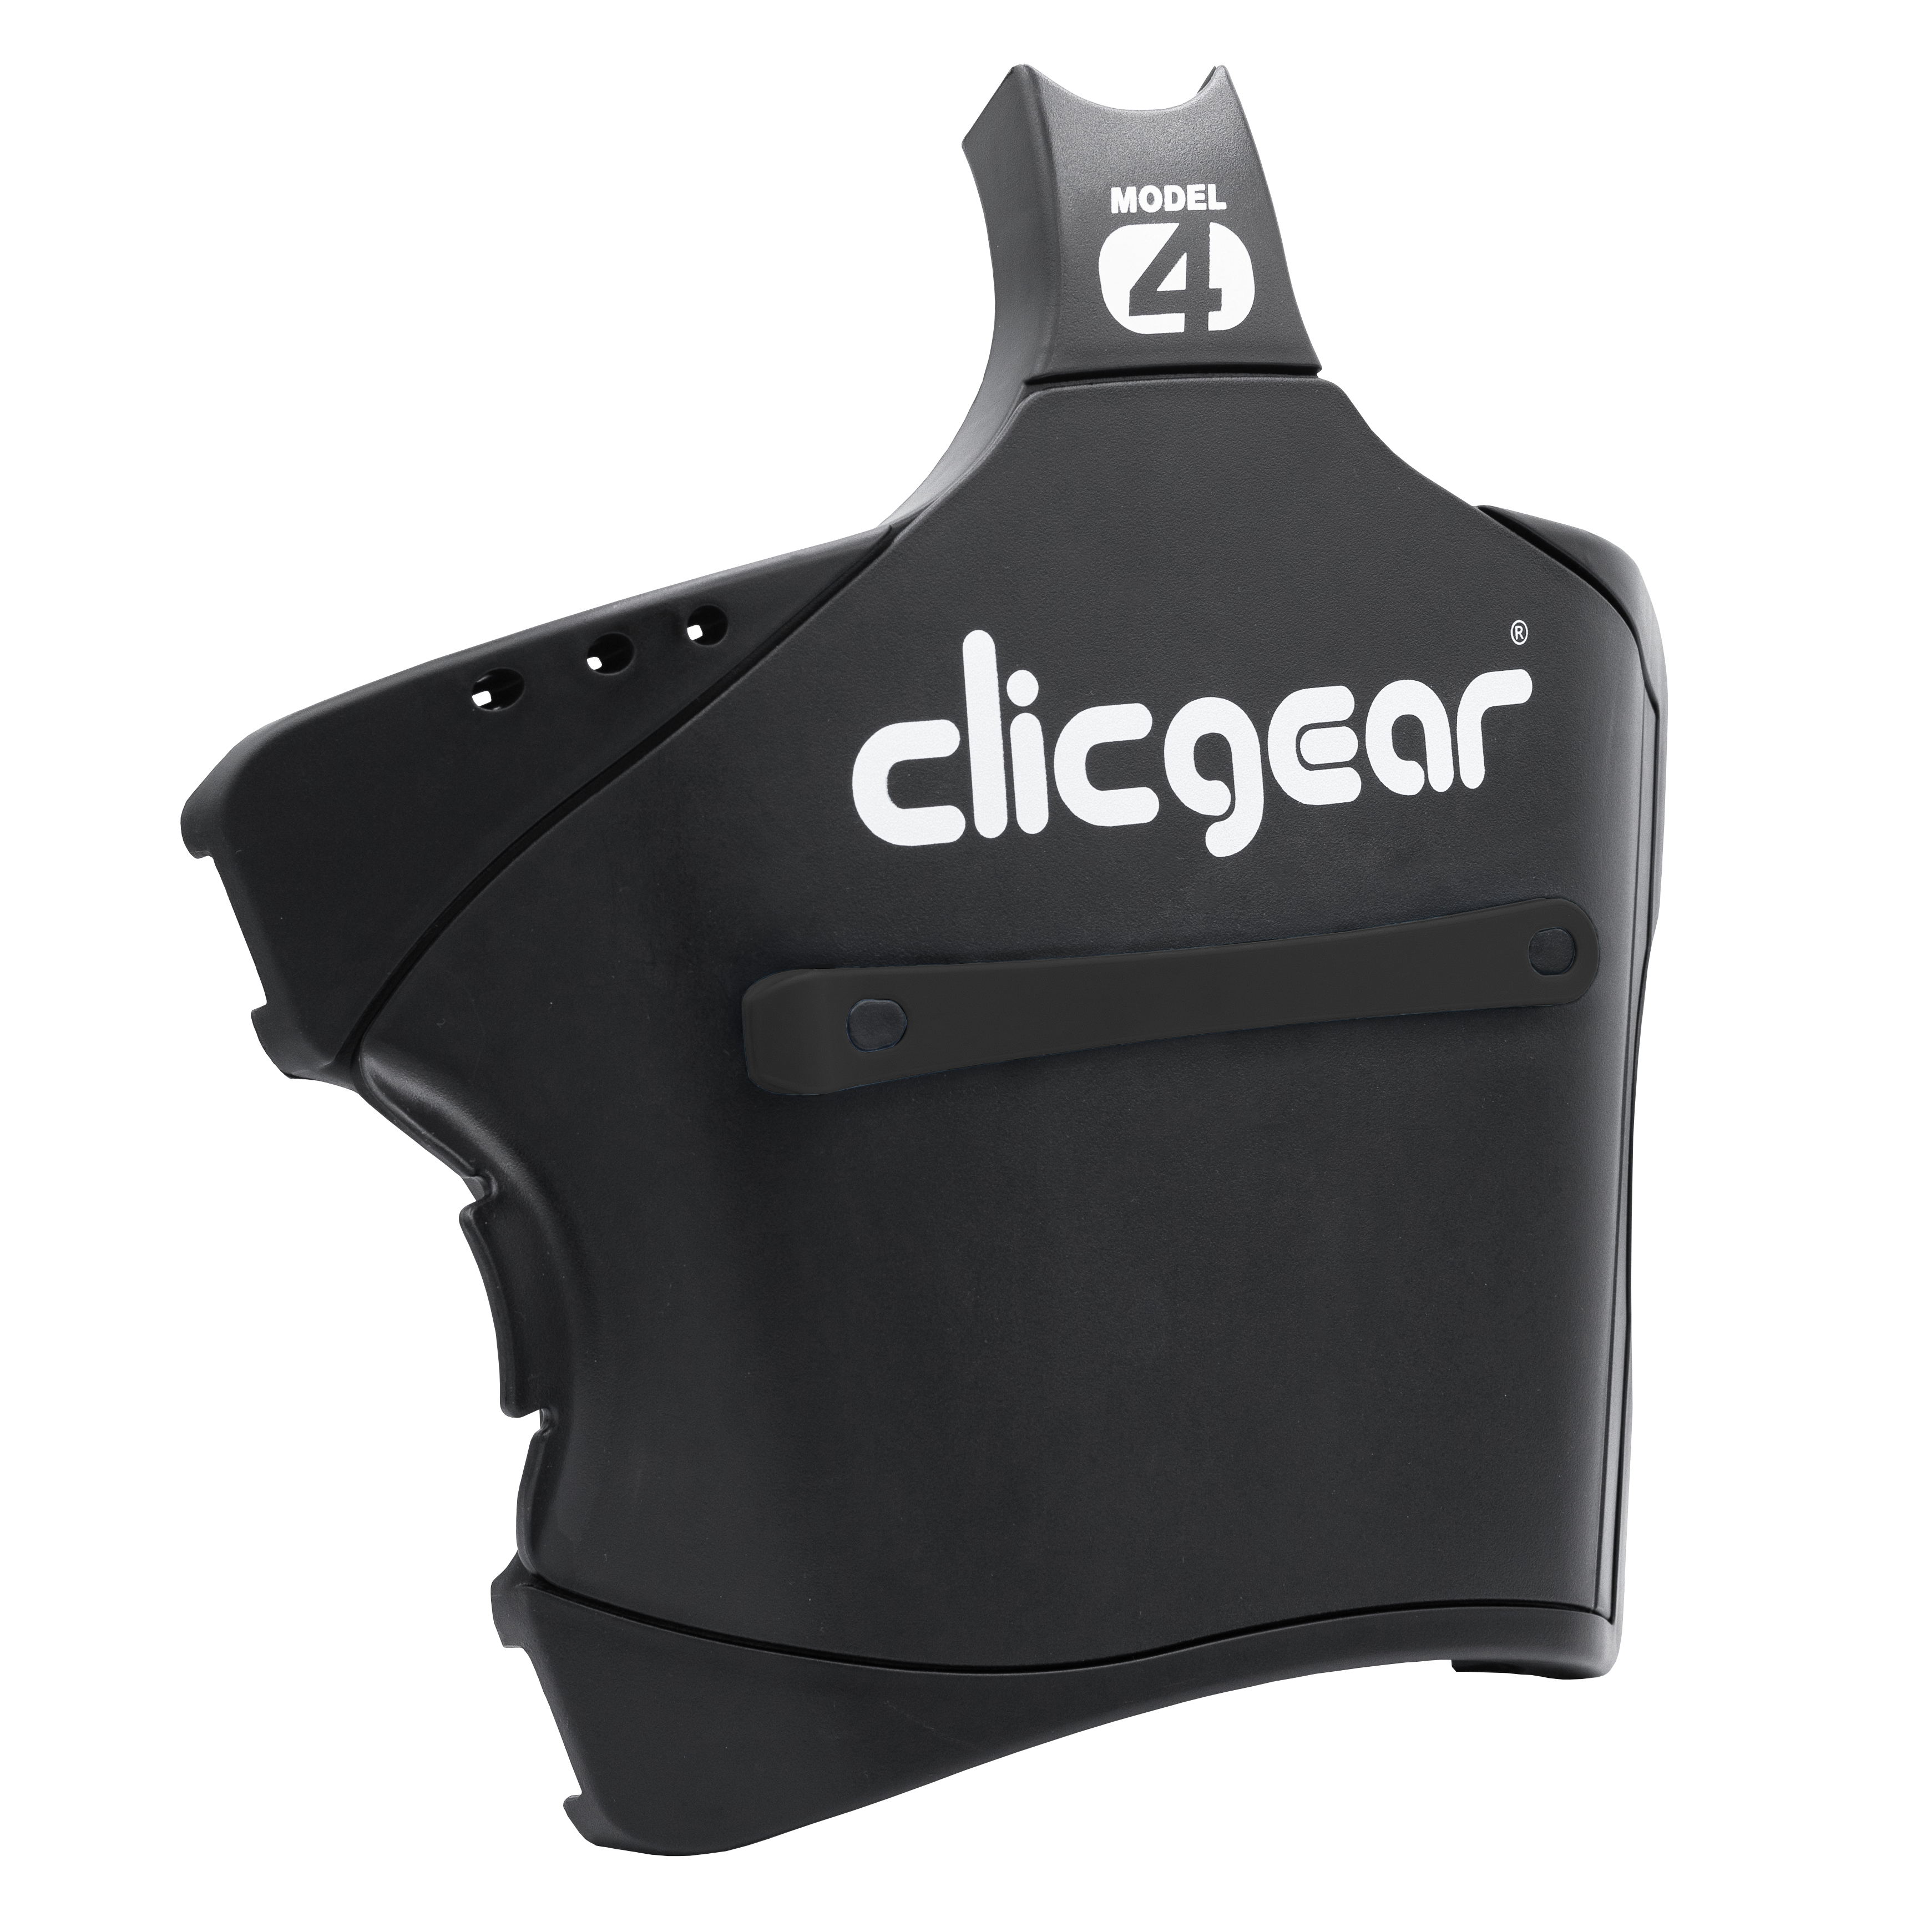 Clicgear Model 4.0 Main Tray and Lid– CLICGEAR